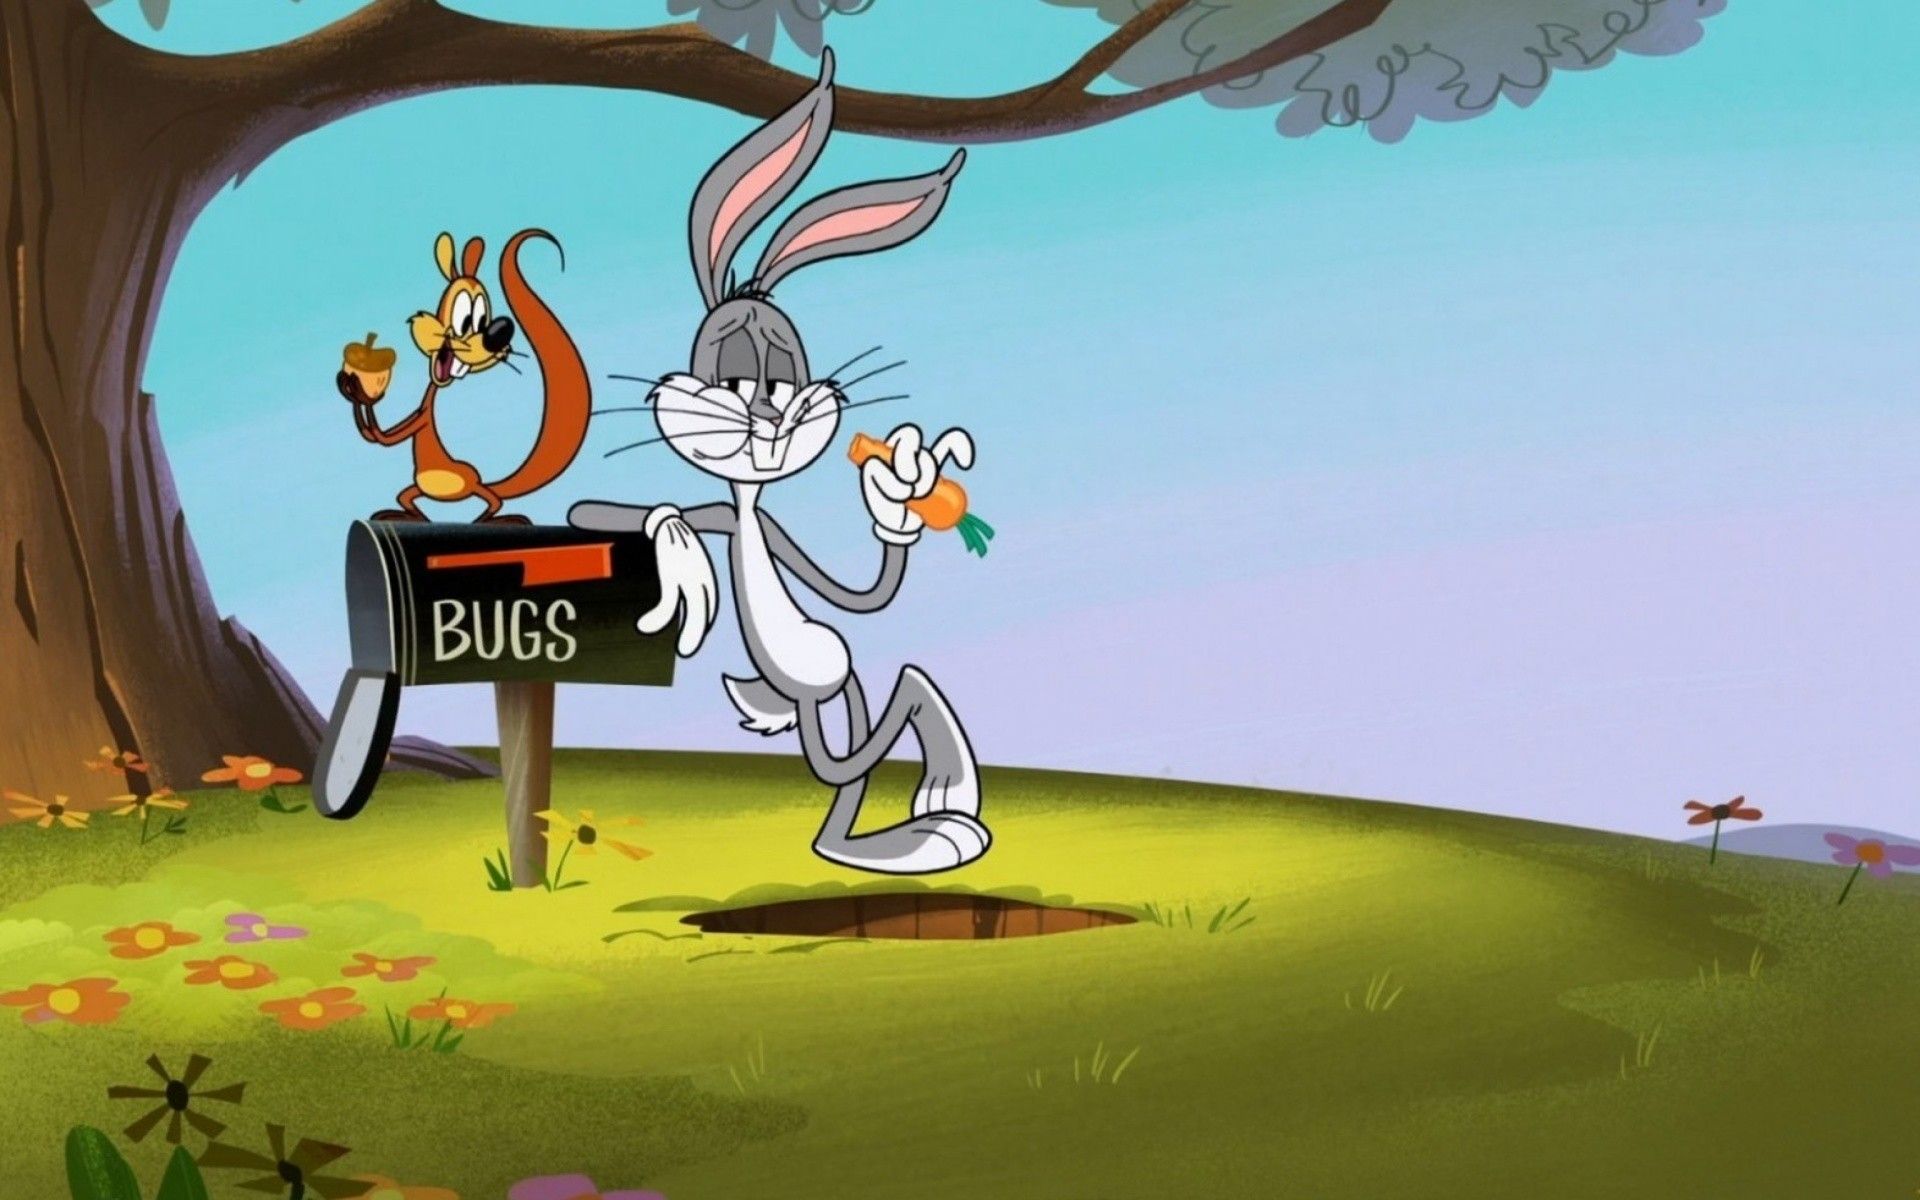 A cartoon rabbit is standing next to an open mailbox - Bugs Bunny